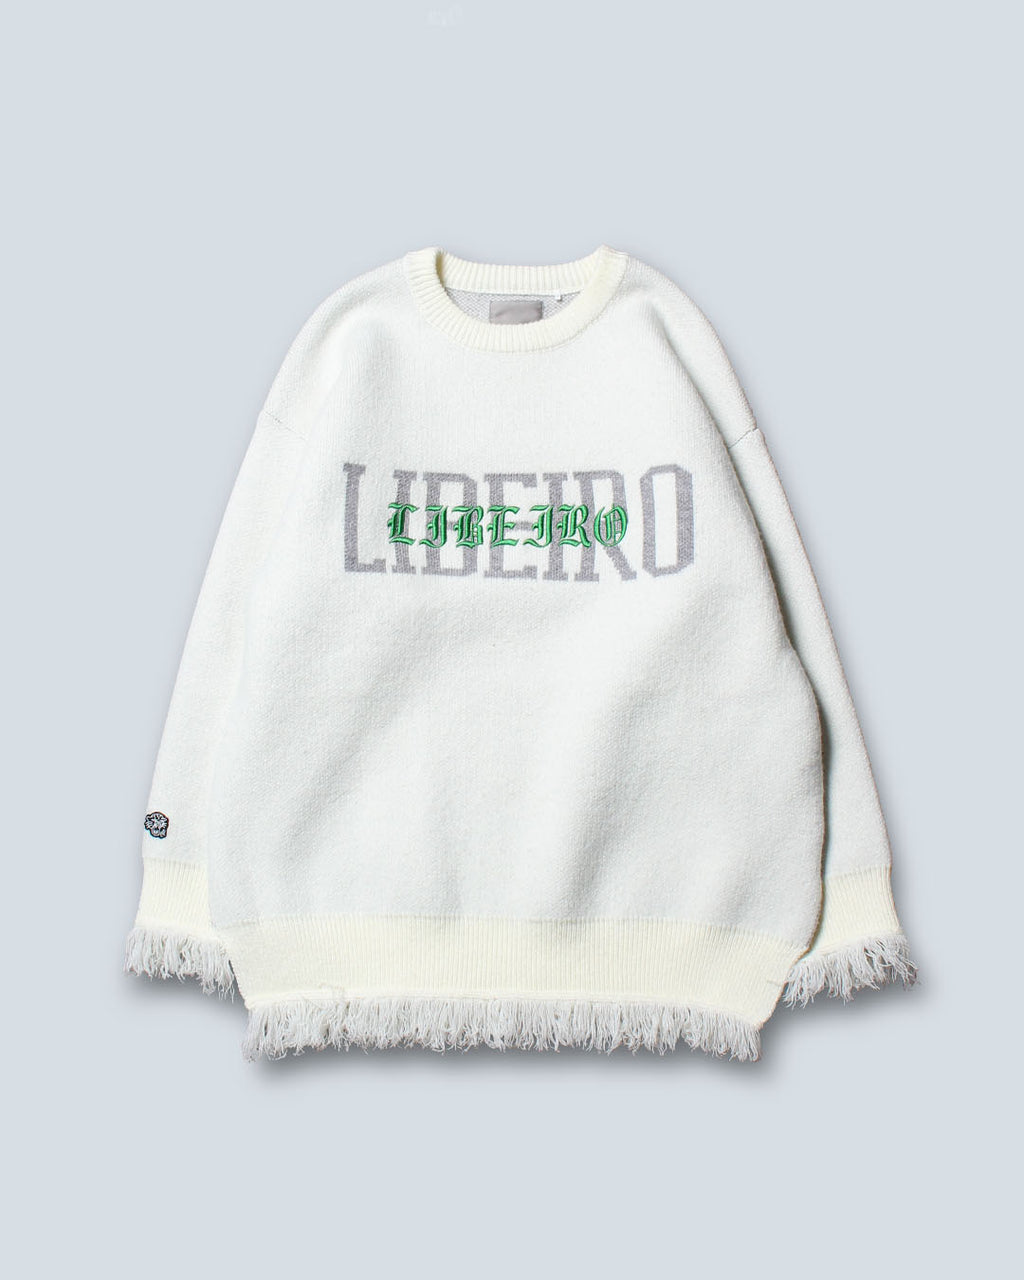 LIBEIRO knit&sweater